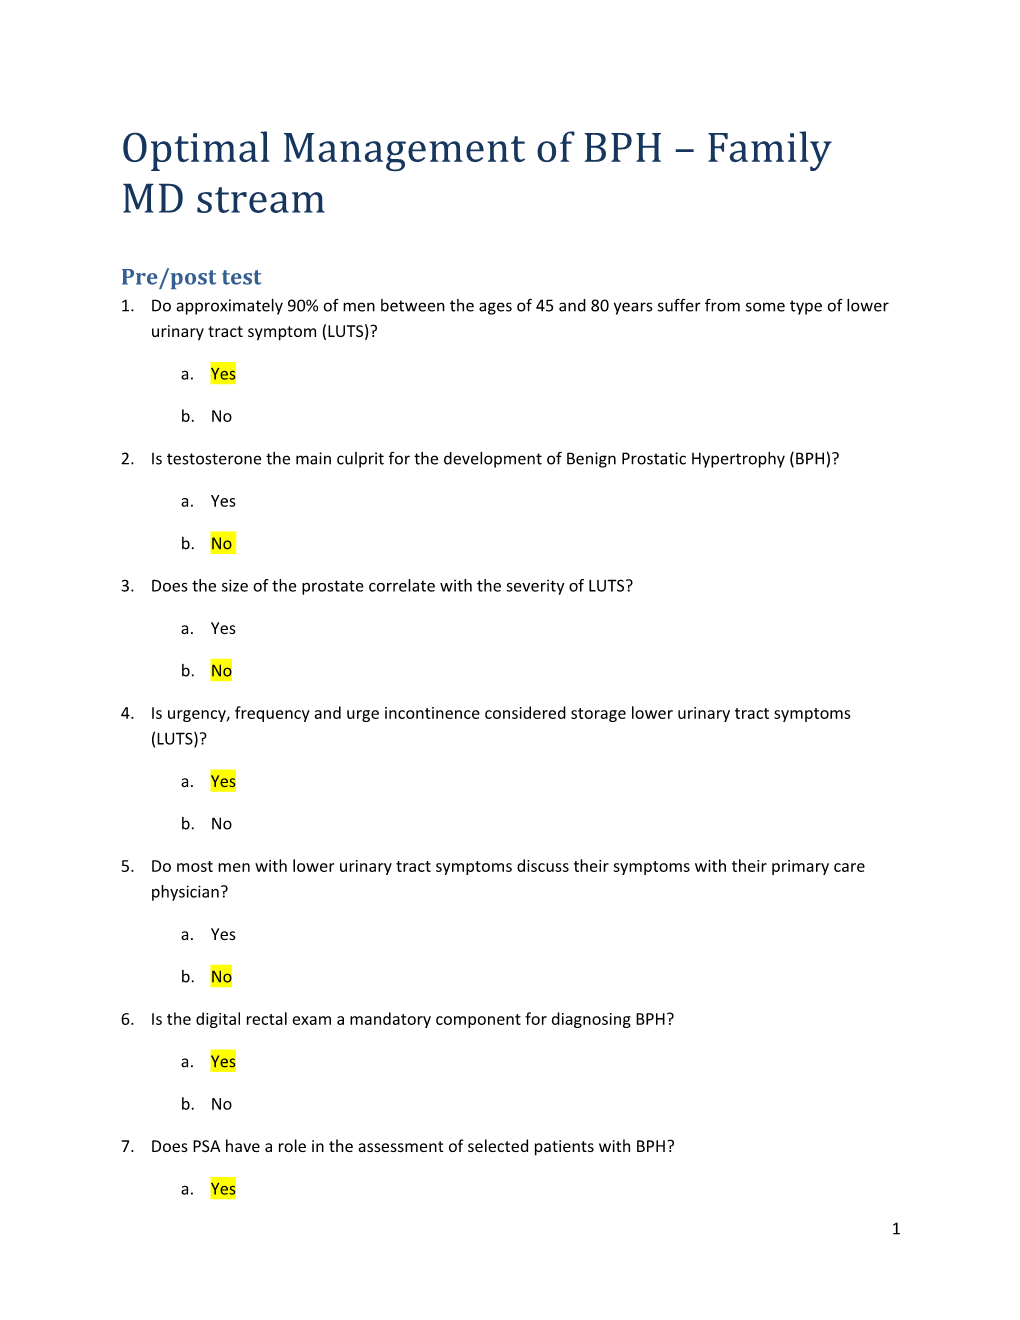 Optimal Management of BPH Family MD Stream